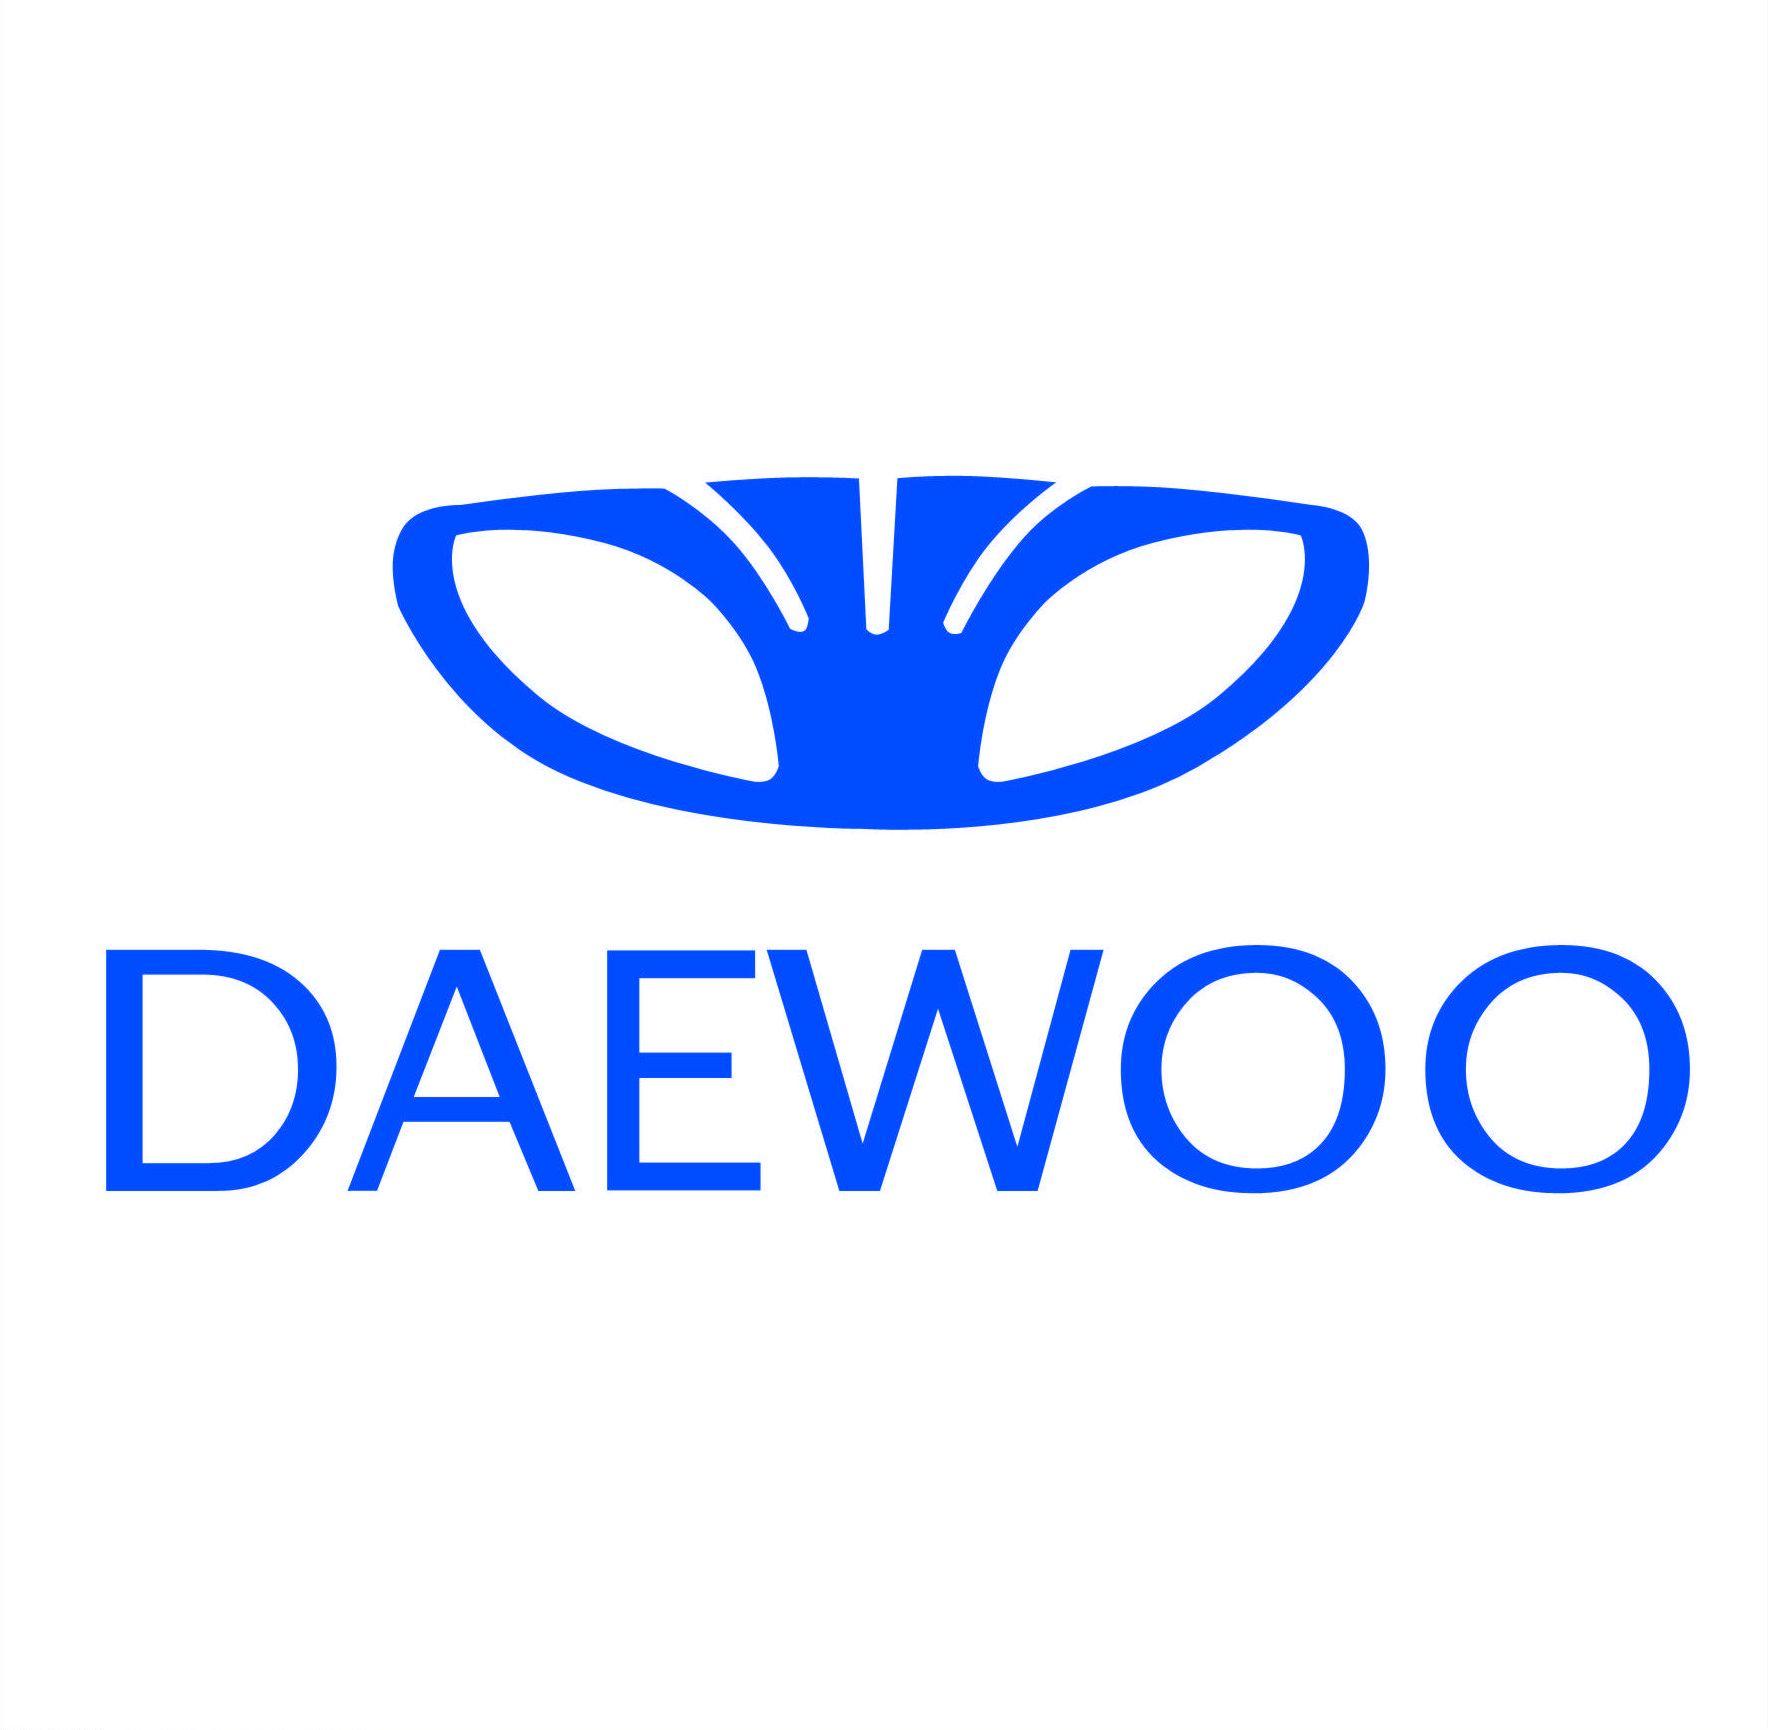 Daewoo Logo - Daewoo logo « Logos and symbols